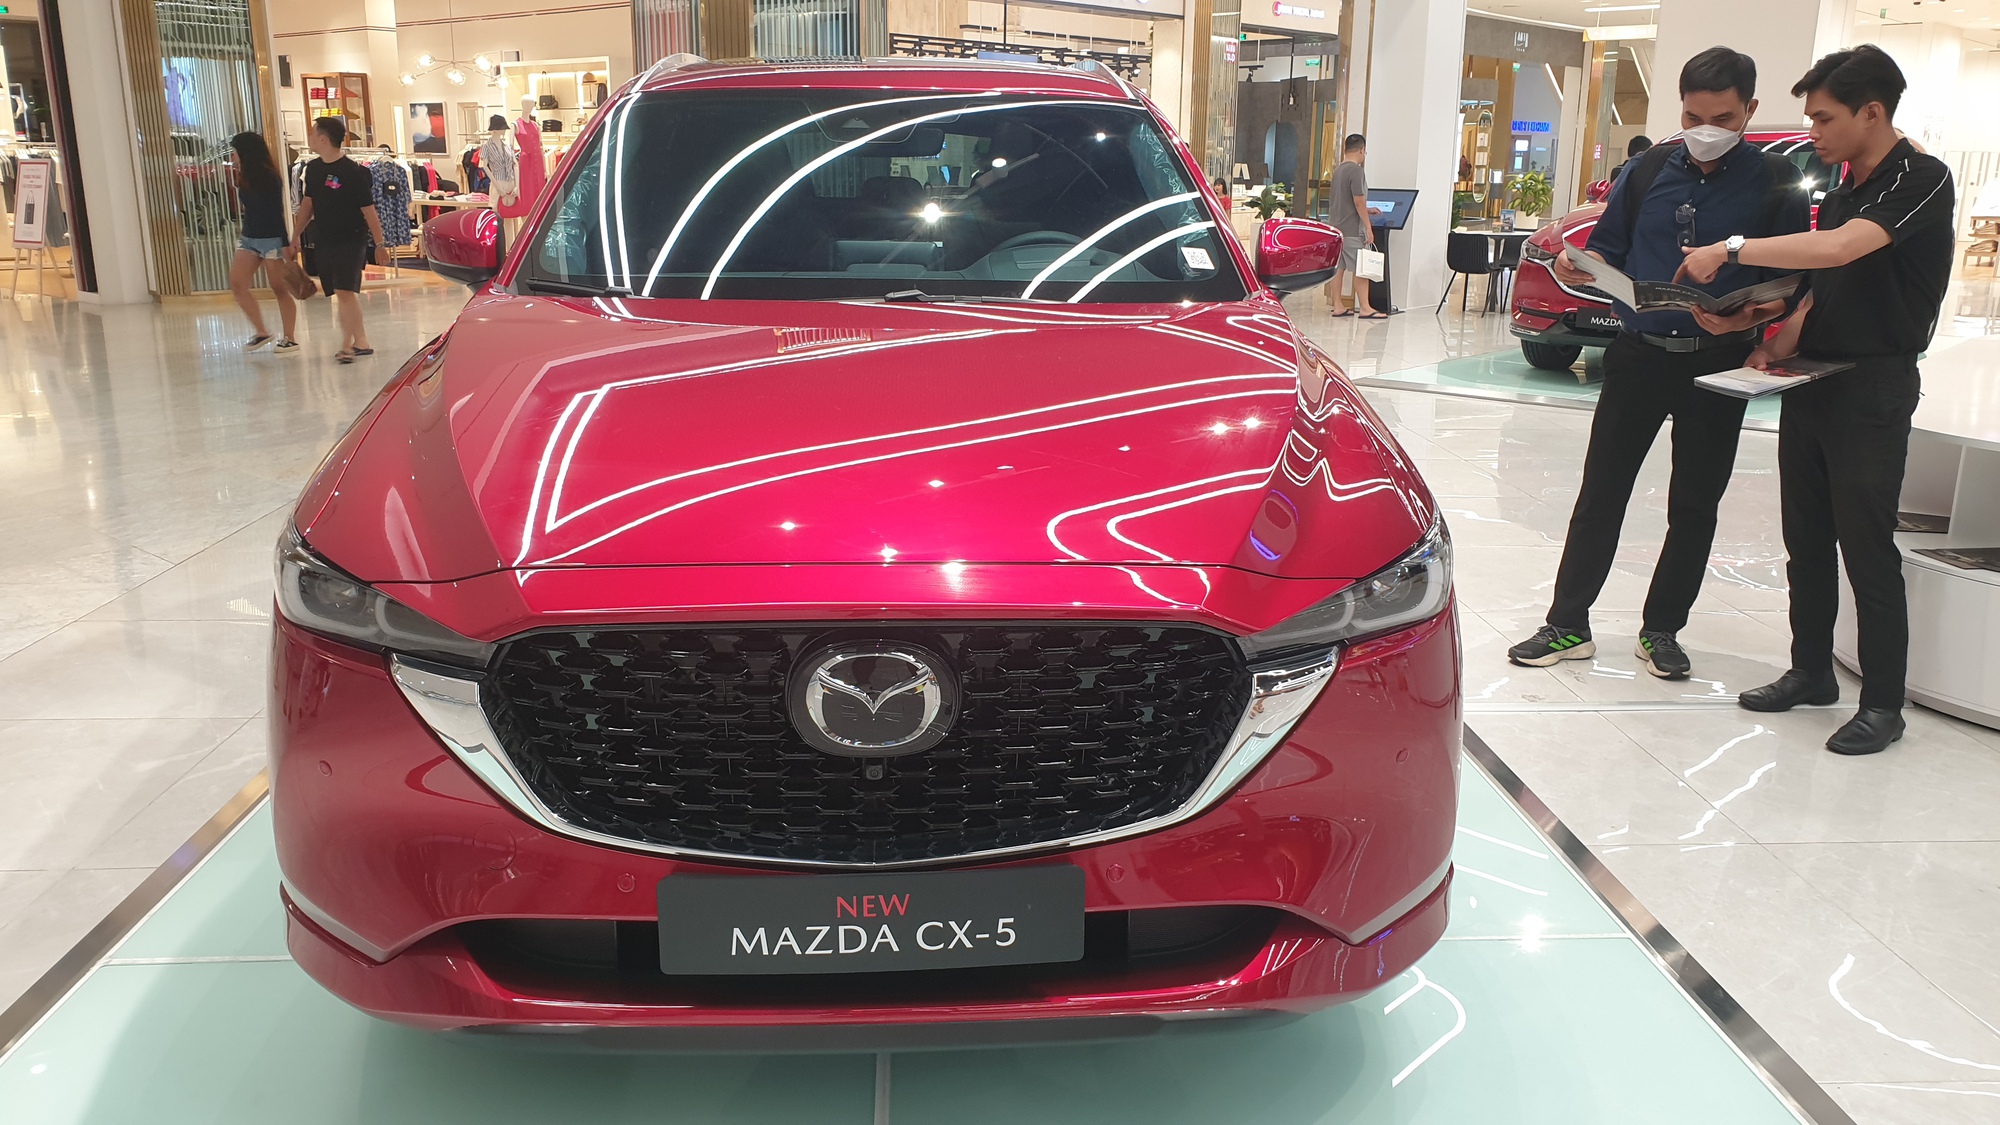 Việc tung ra thị trường bản nâng cấp vào cuối năm ngoái giúp Mazda CX-5 tiếp tục tạo sức hút với khách hàng bất chấp áp lực cạnh tranh ngày càng tăng khi hàng loạt đối thủ giảm giá bán. Với 2.319 xe bán ra trong quý 1/2024, Mazda CX-5 tiếp tục dẫn đầu phân khúc crossover hạng C tại Việt Nam.